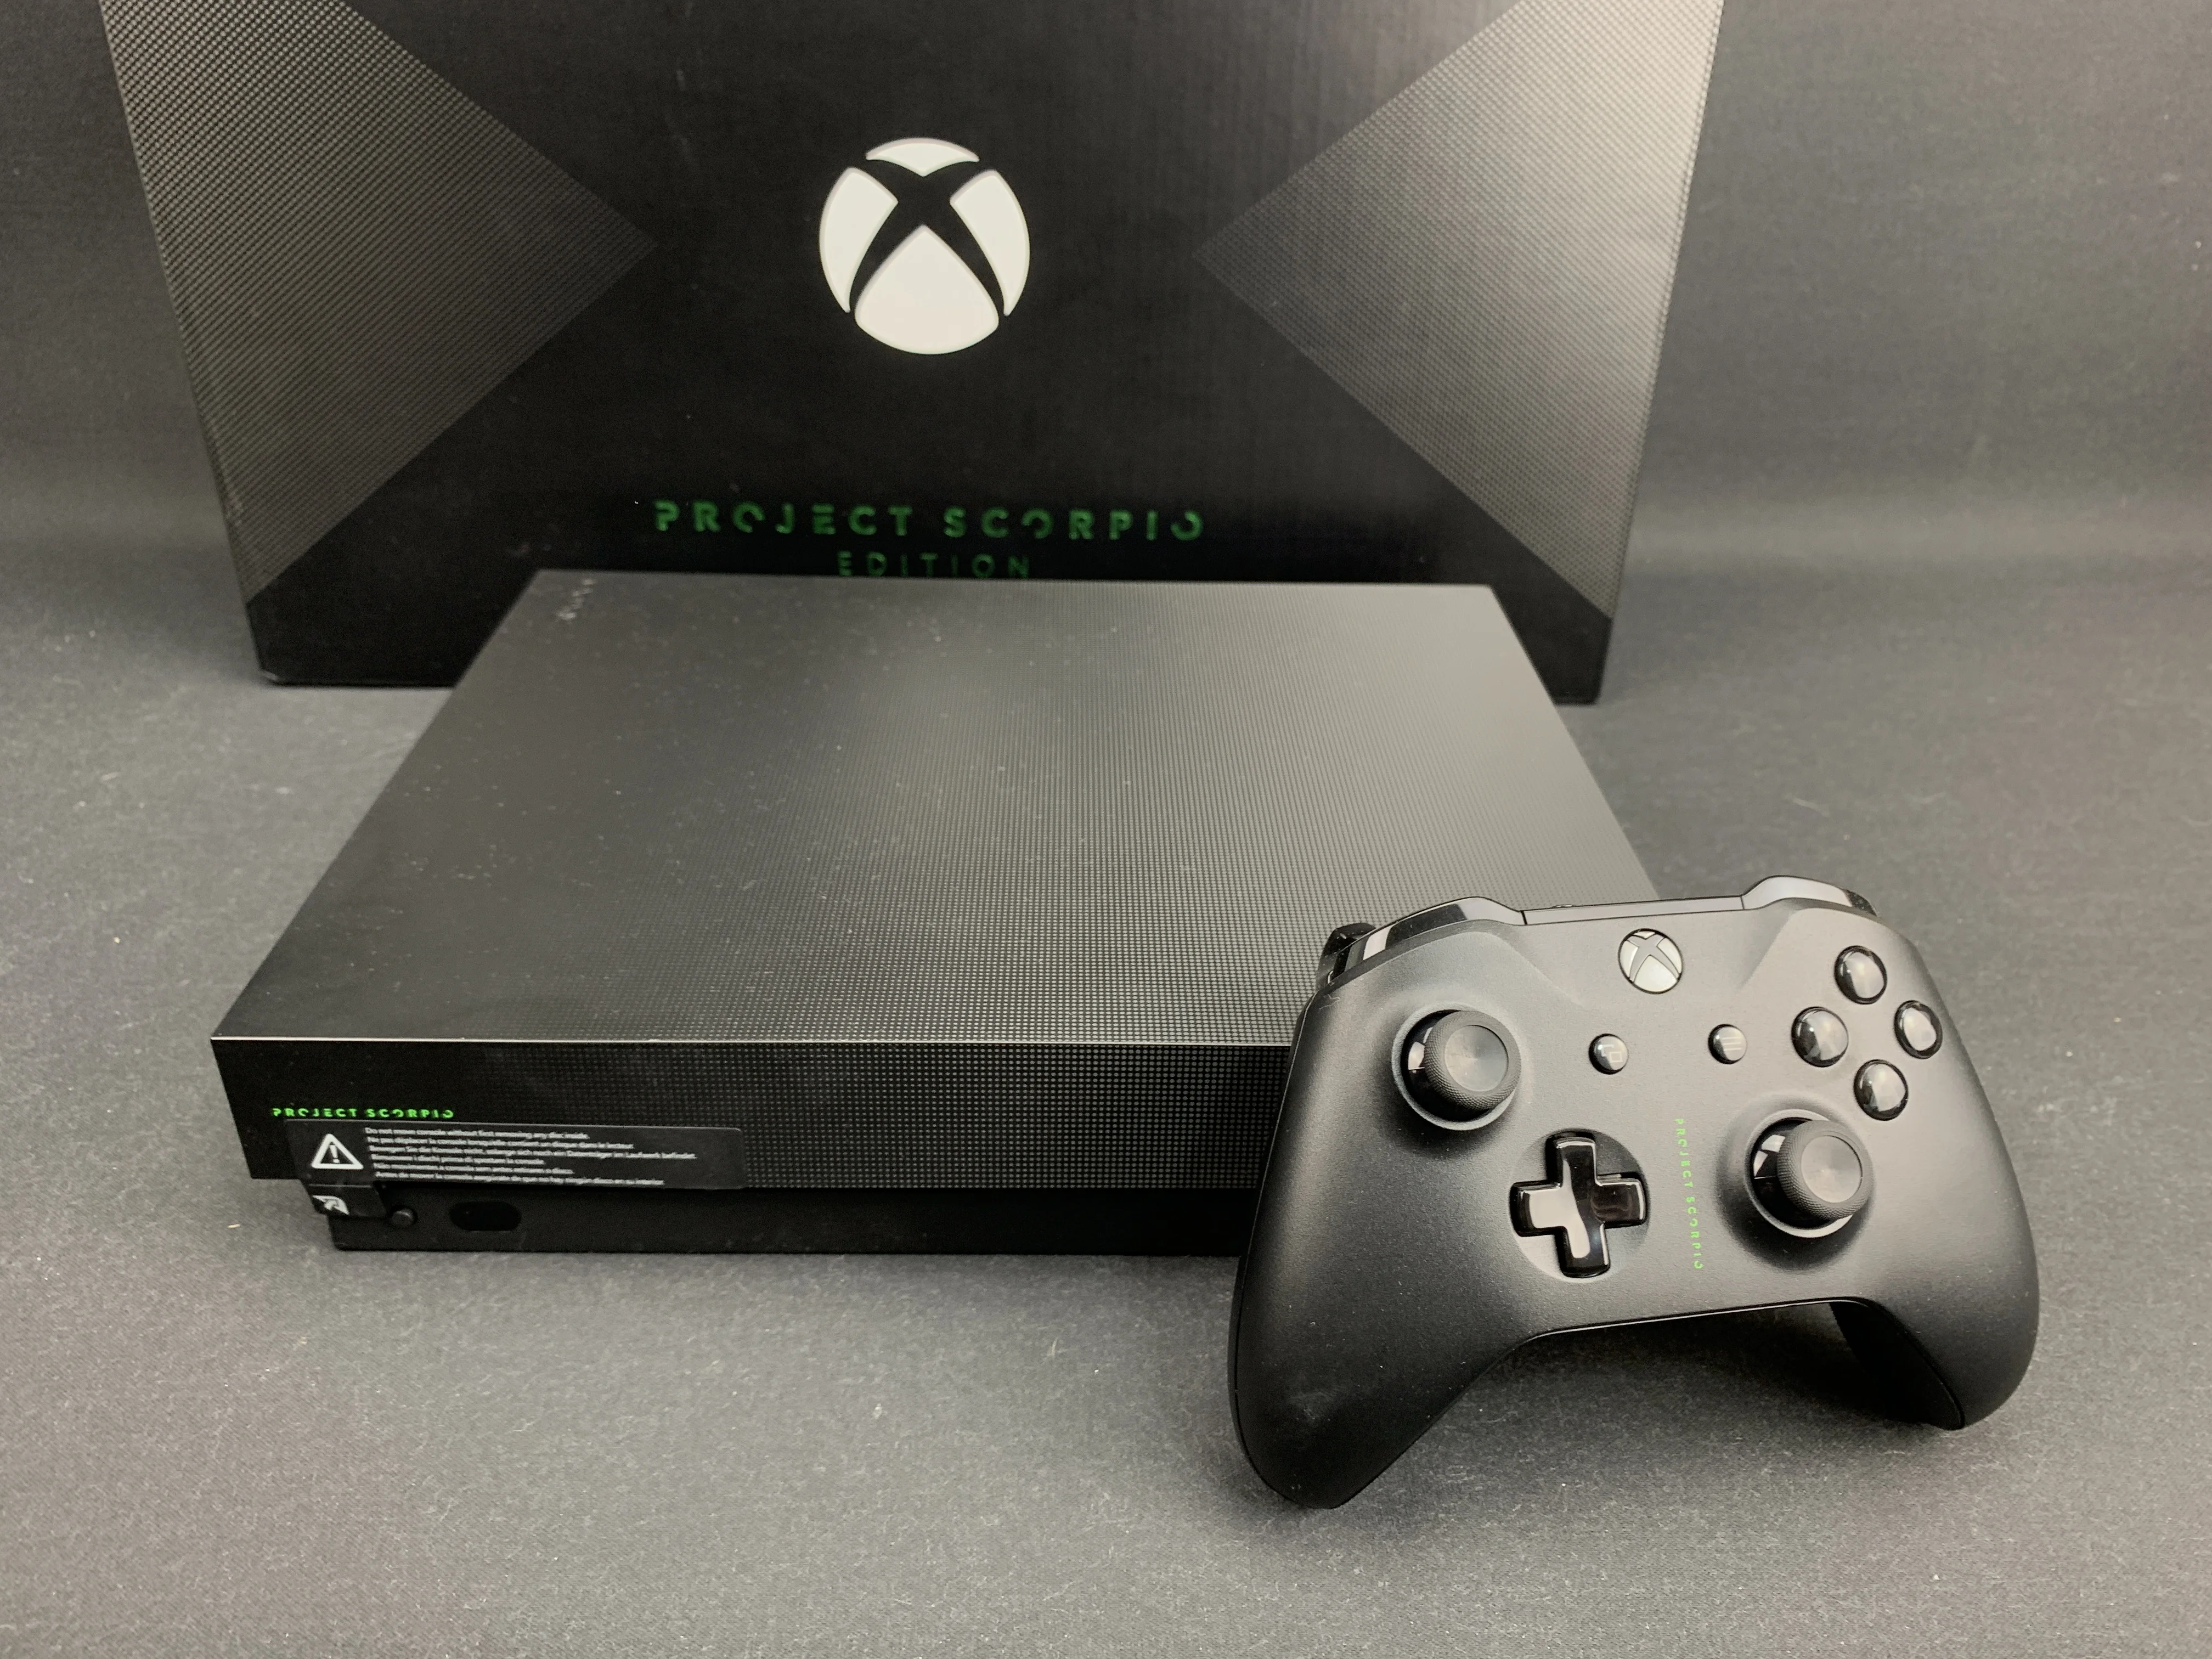 Microsoft Xbox One X Project Scorpio Console